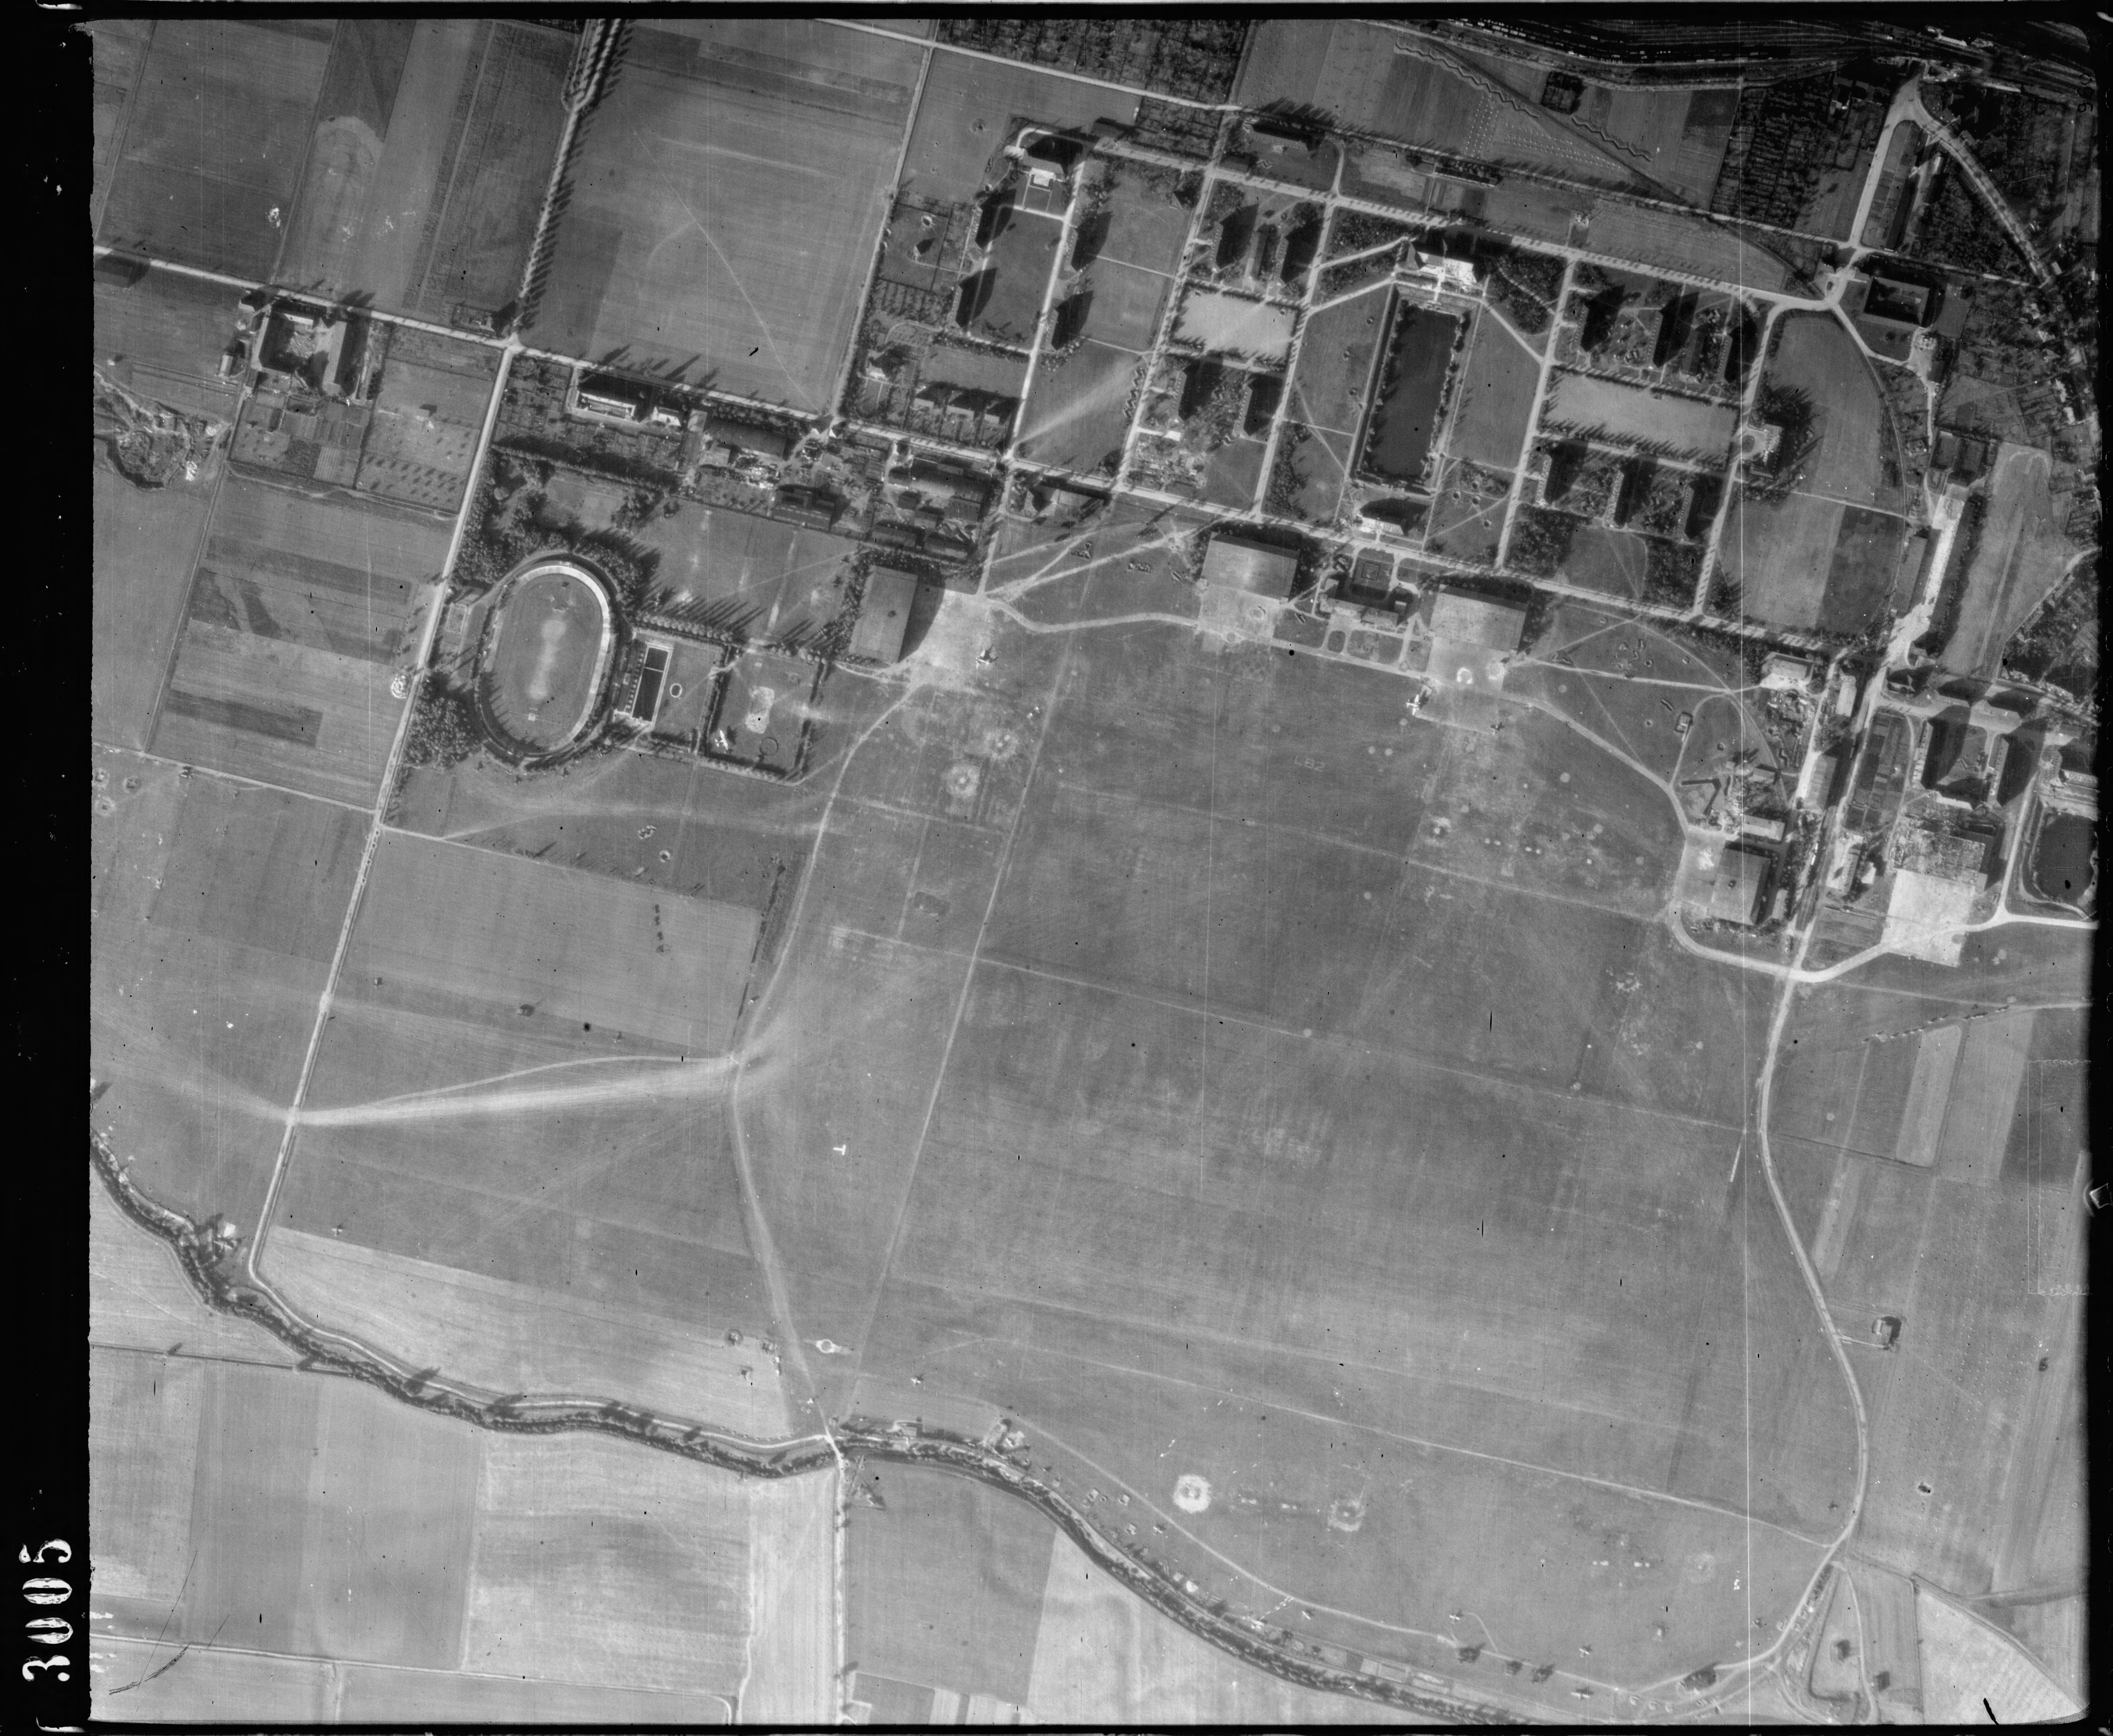 Detailaufnahme vom Nordhäuser Stadion um dem Fliegerhorst (Oktober 1944)